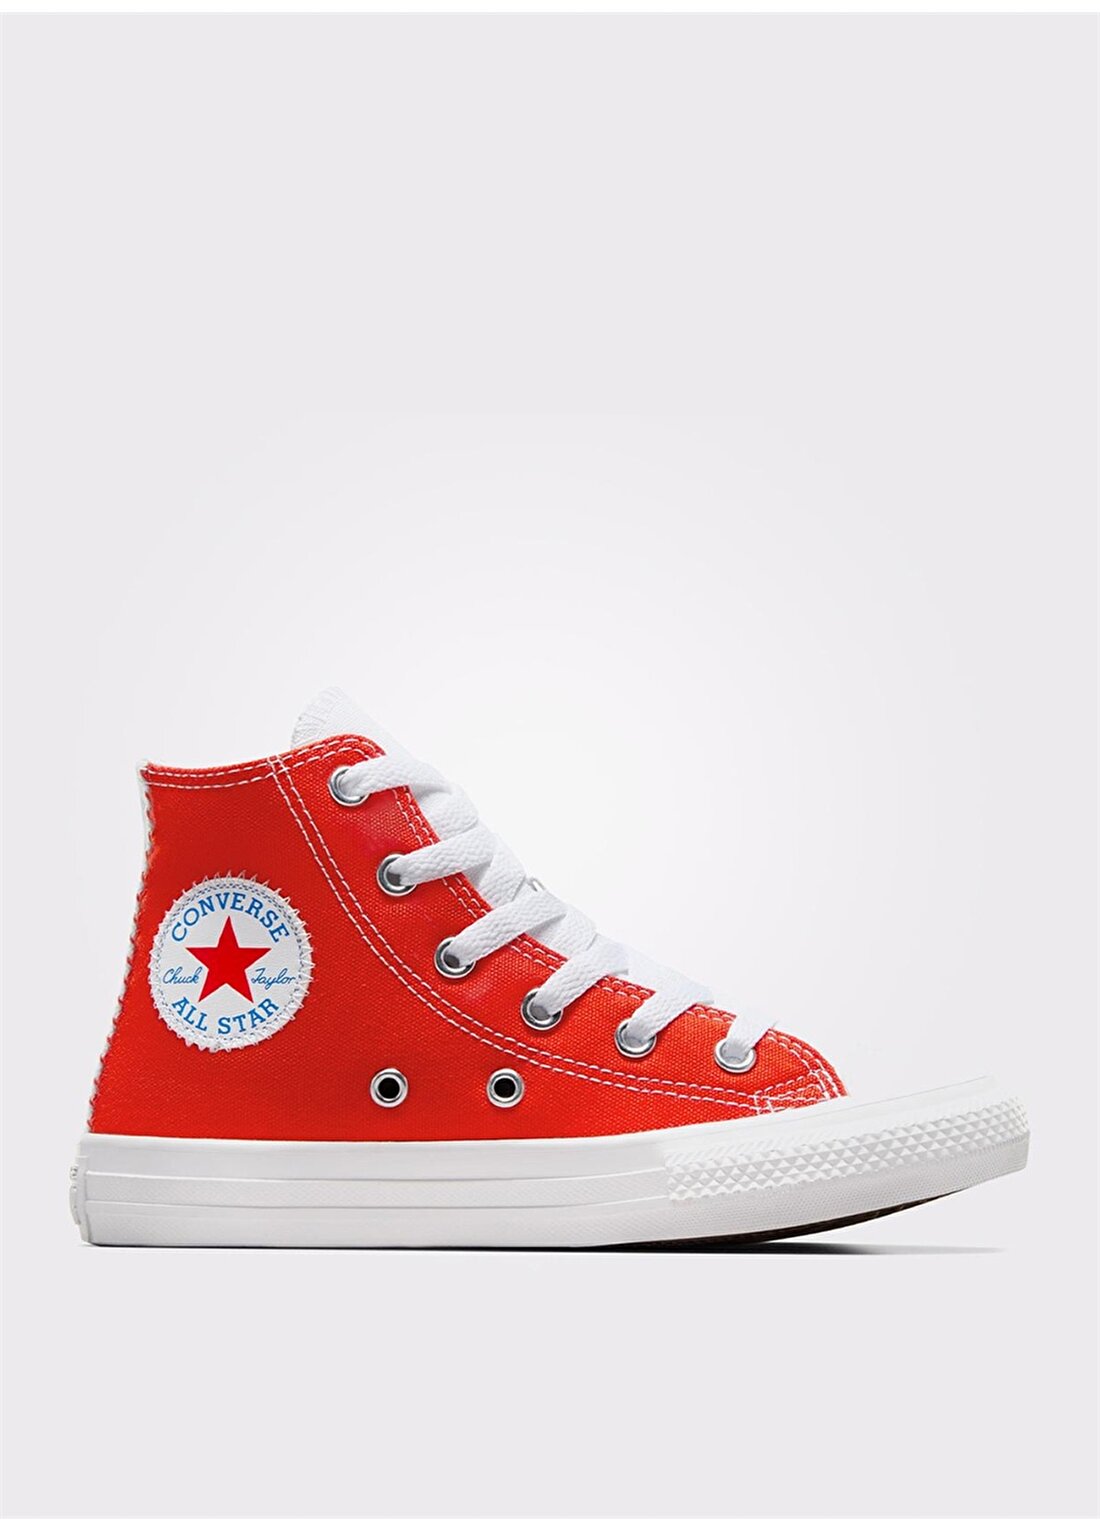 Converse Kırmızı - Mavi Erkek Yürüyüş Ayakkabısı A08120C.452-CHUCK TAYLOR ALL STAR